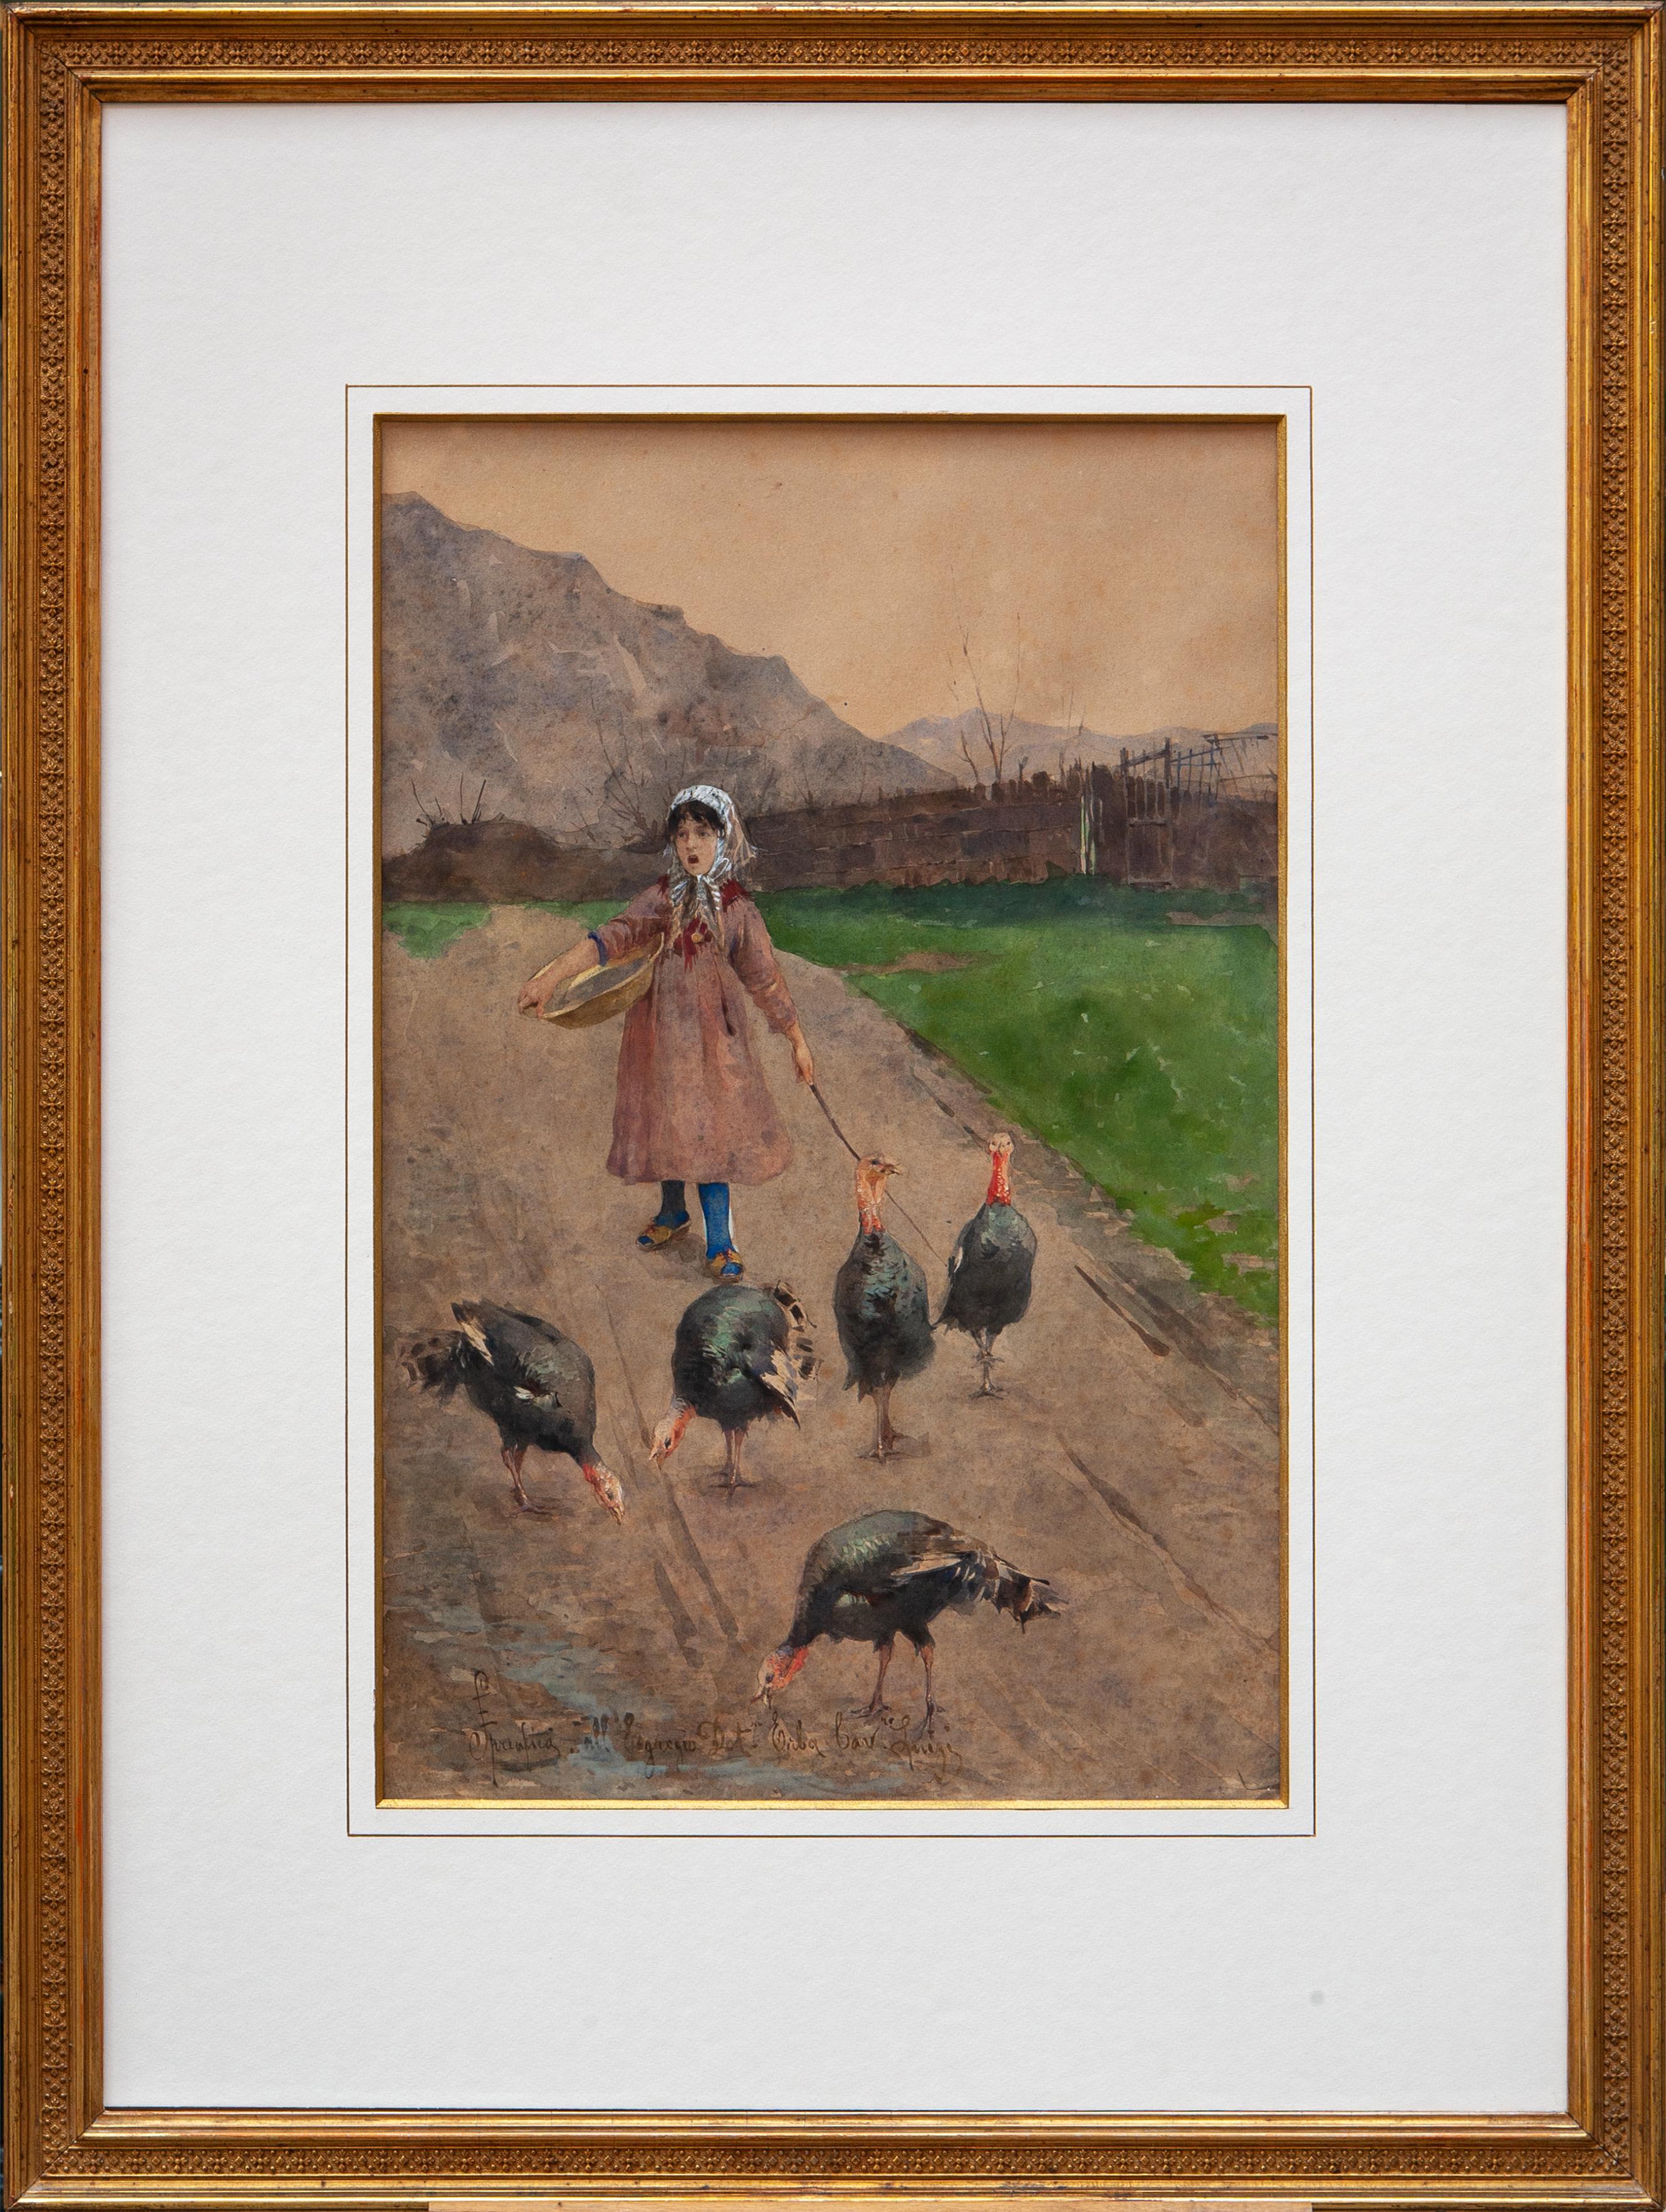 Eugenio Spreafico (Monza, 1856 – Magreglio, 1919) Figurative Art - Little girl with turkeys